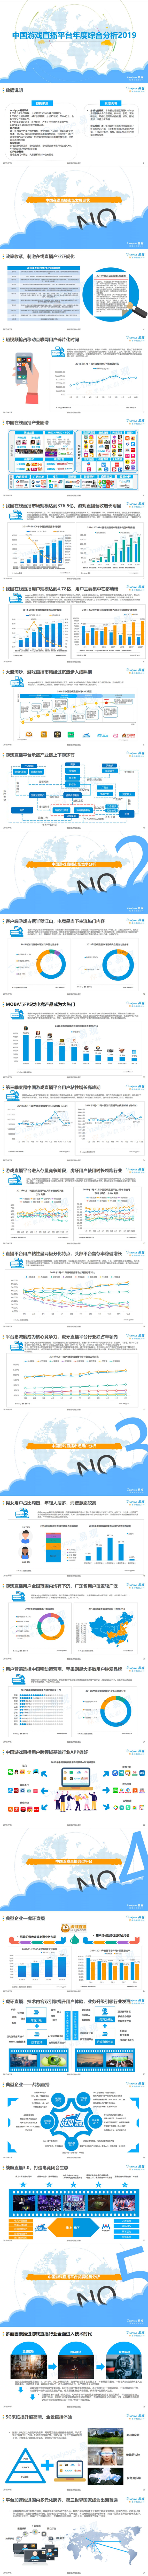 【易观】中国游戏直播平台年度综合分析_0.jpg